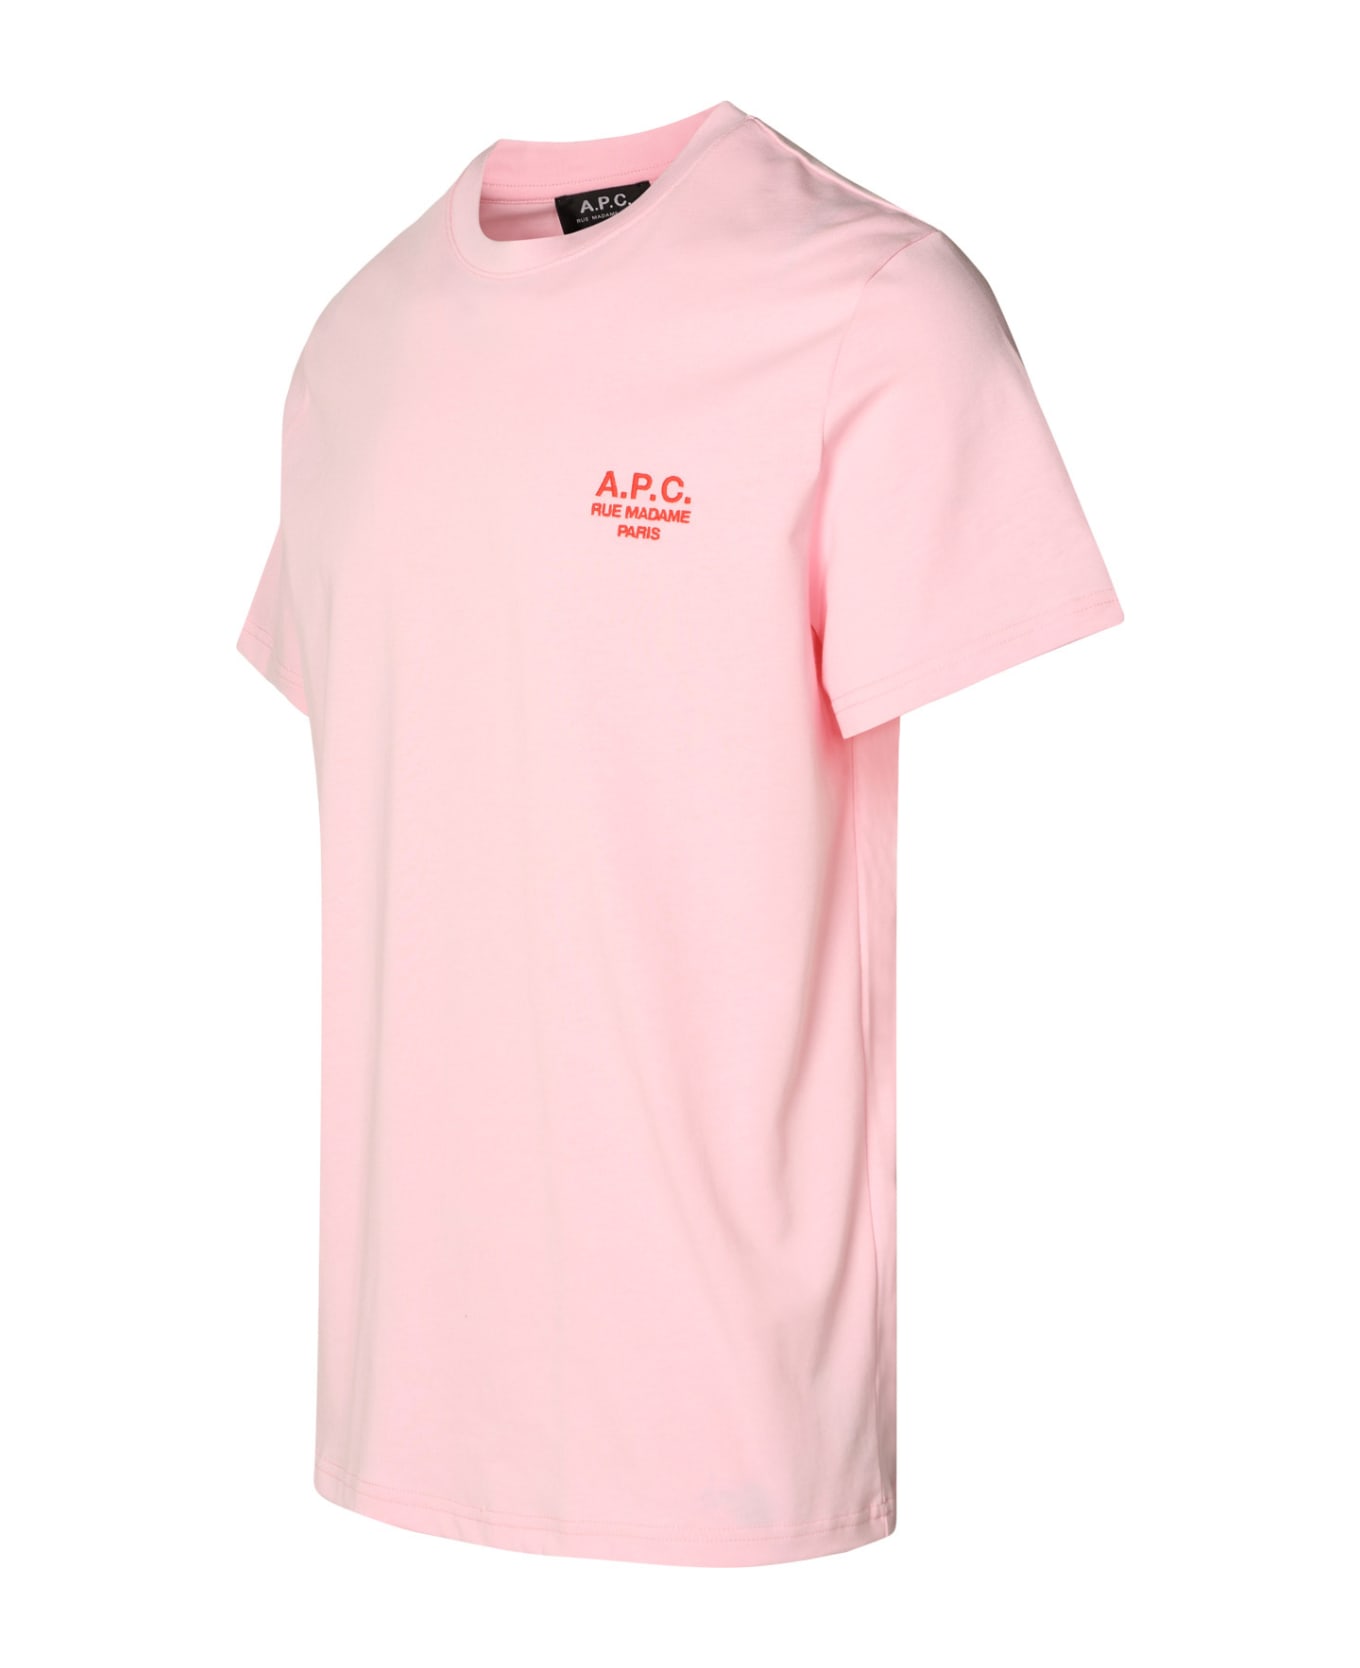 A.P.C. Logo Printed Crewneck T-shirt - Pink